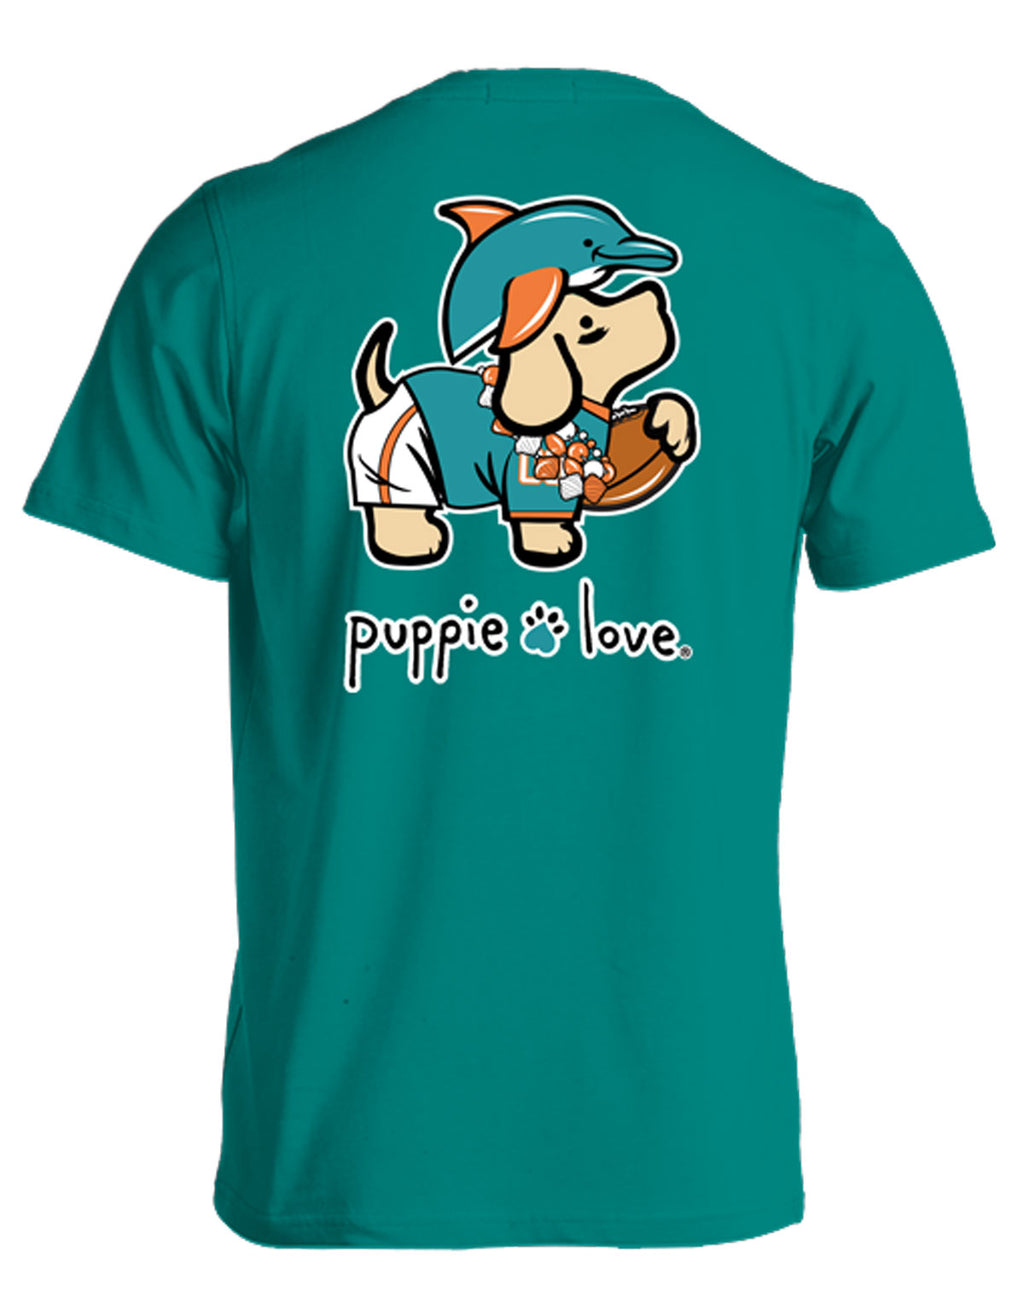 AQUA AND ORANGE MASCOT PUP - Puppie Love